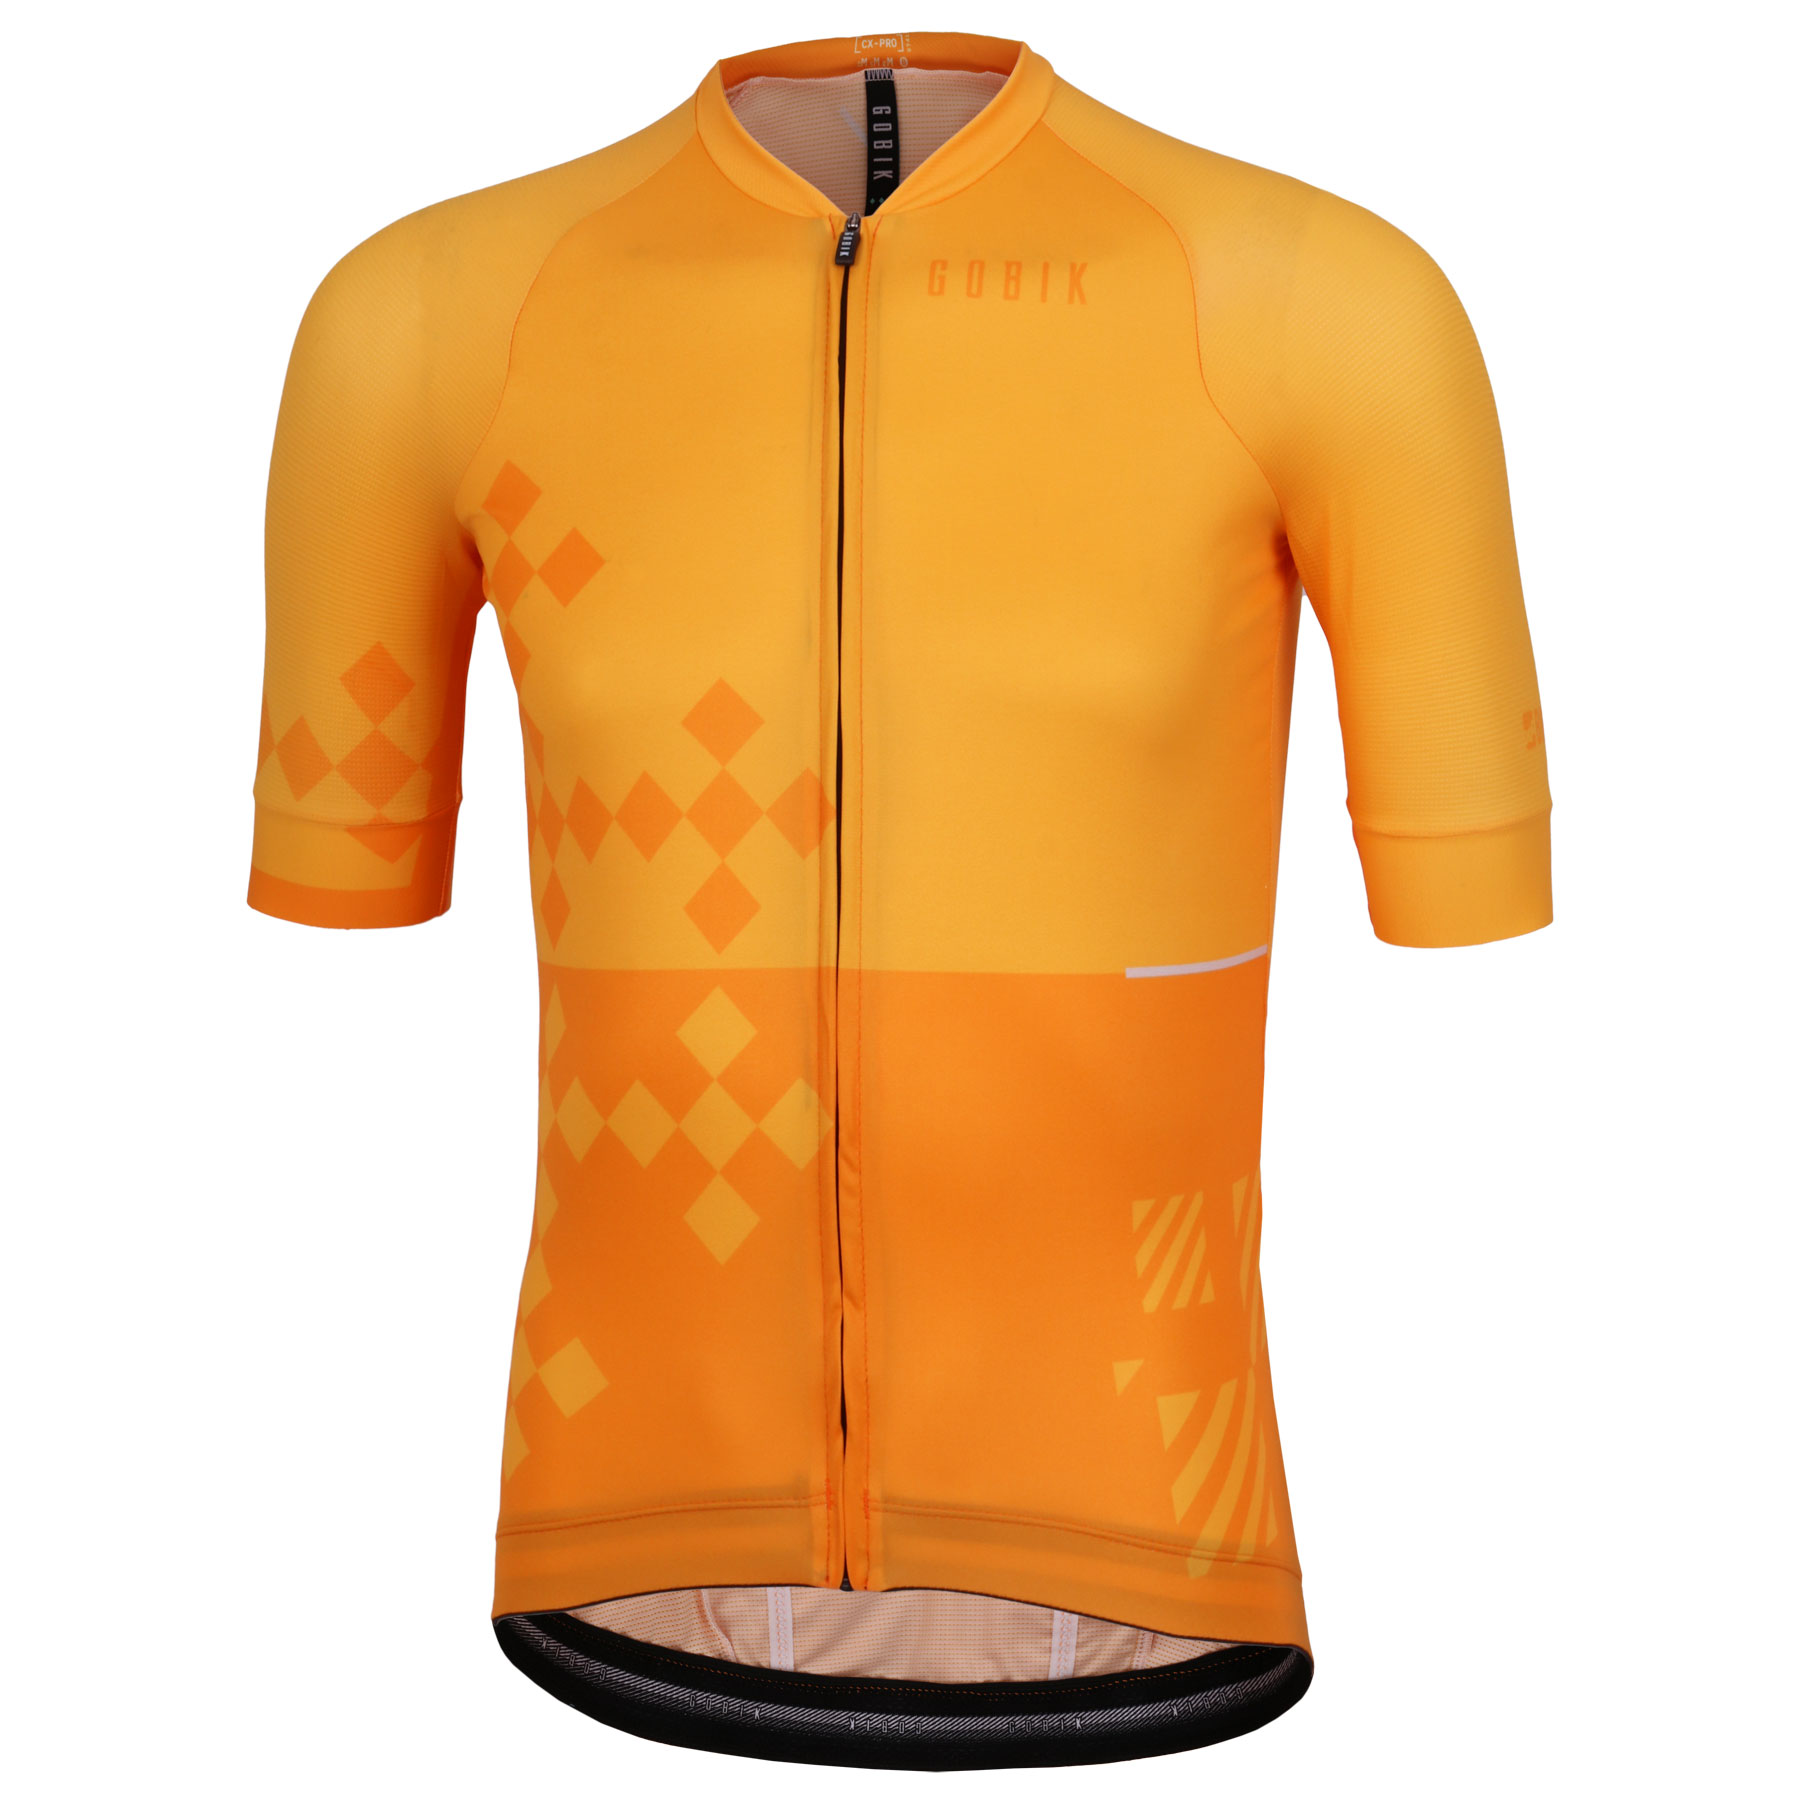 Productfoto van Gobik CX Pro 2.0 Unisex Fietsshirt met Korte Mouwen - oranje